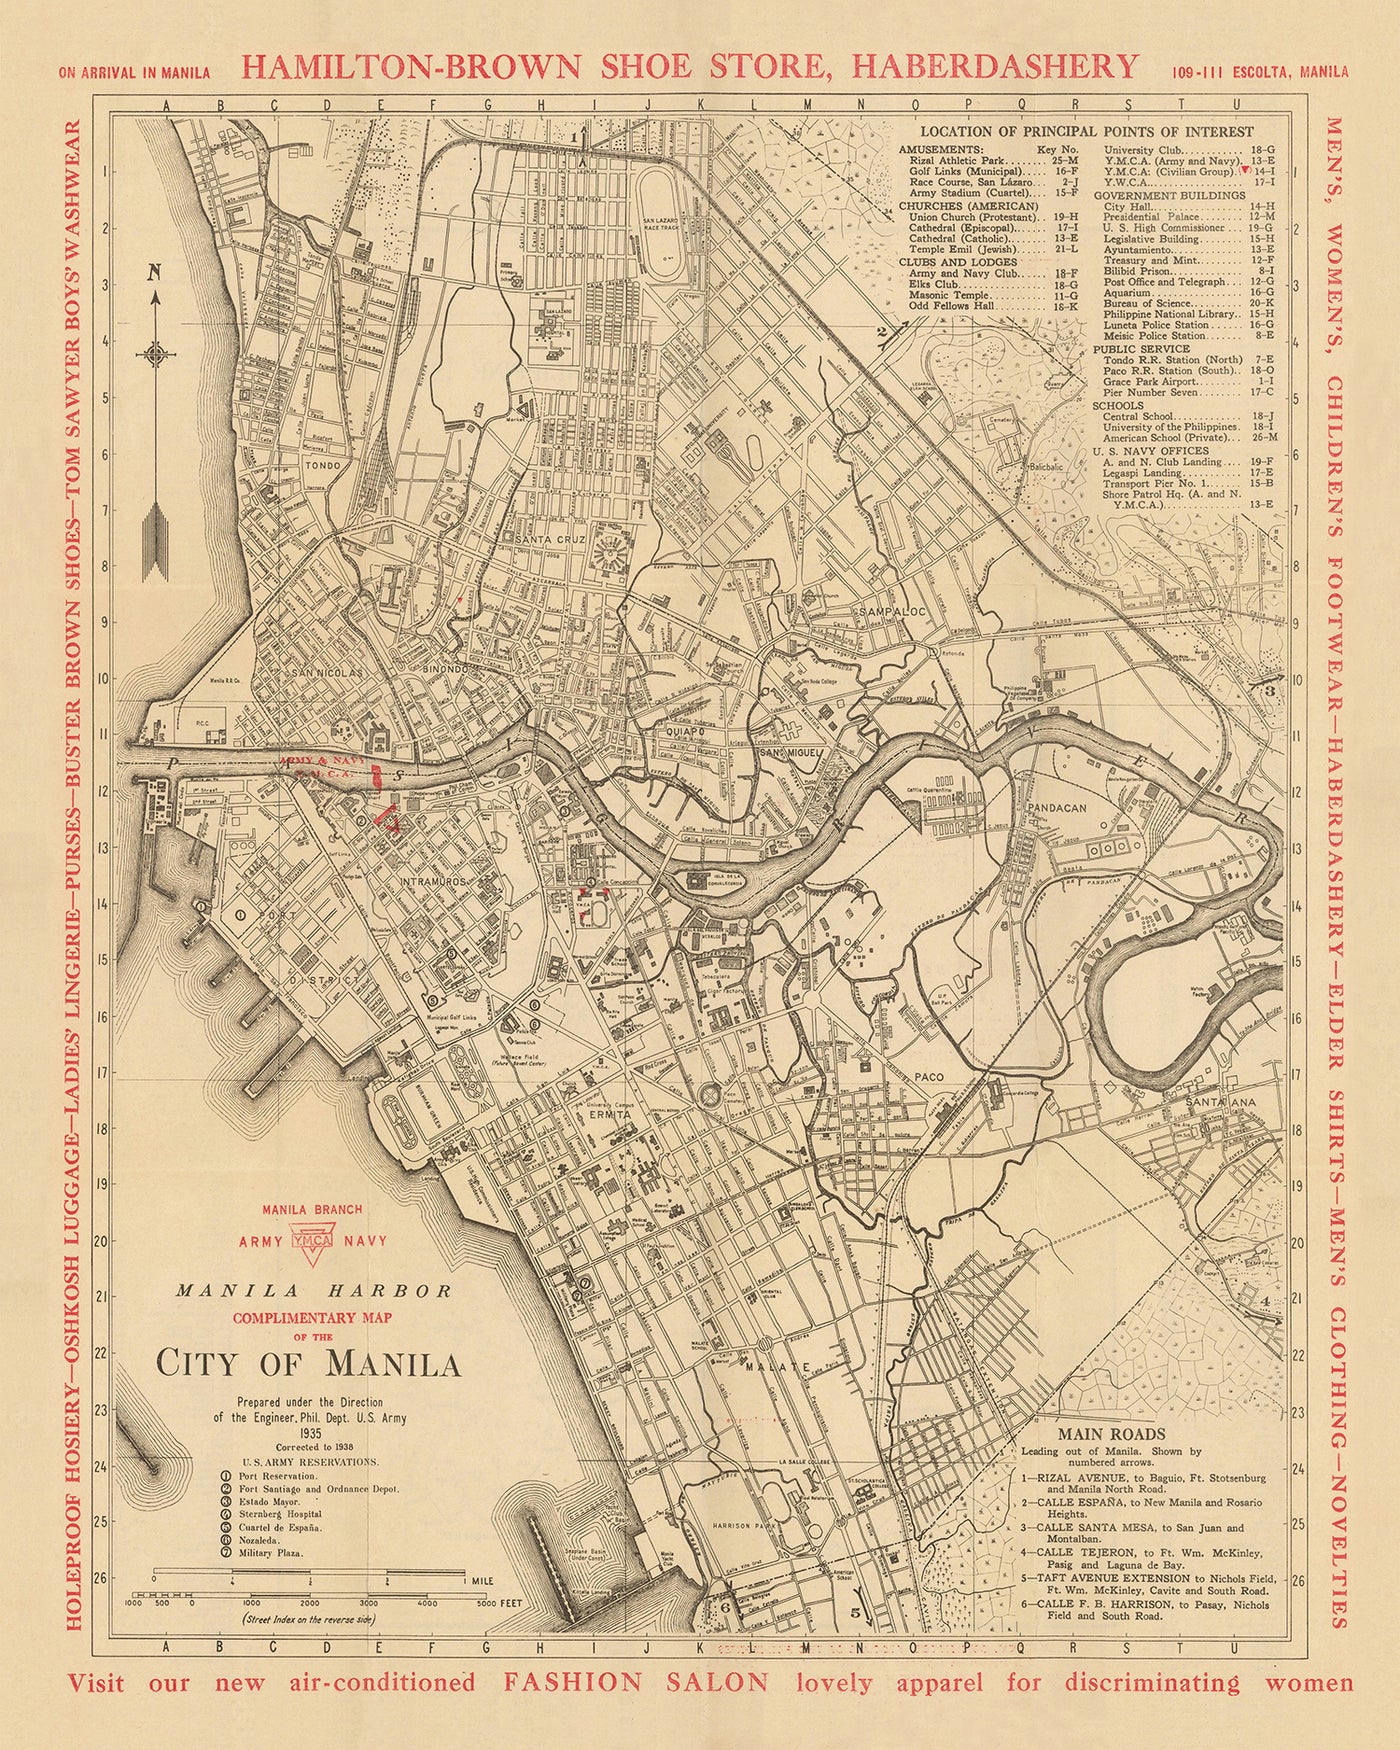 Alte Karte von Manila von YMCA & US Army, 1938: Intramuros, Ermita, Quiapo, San Miguel, Binondo, Pandacan